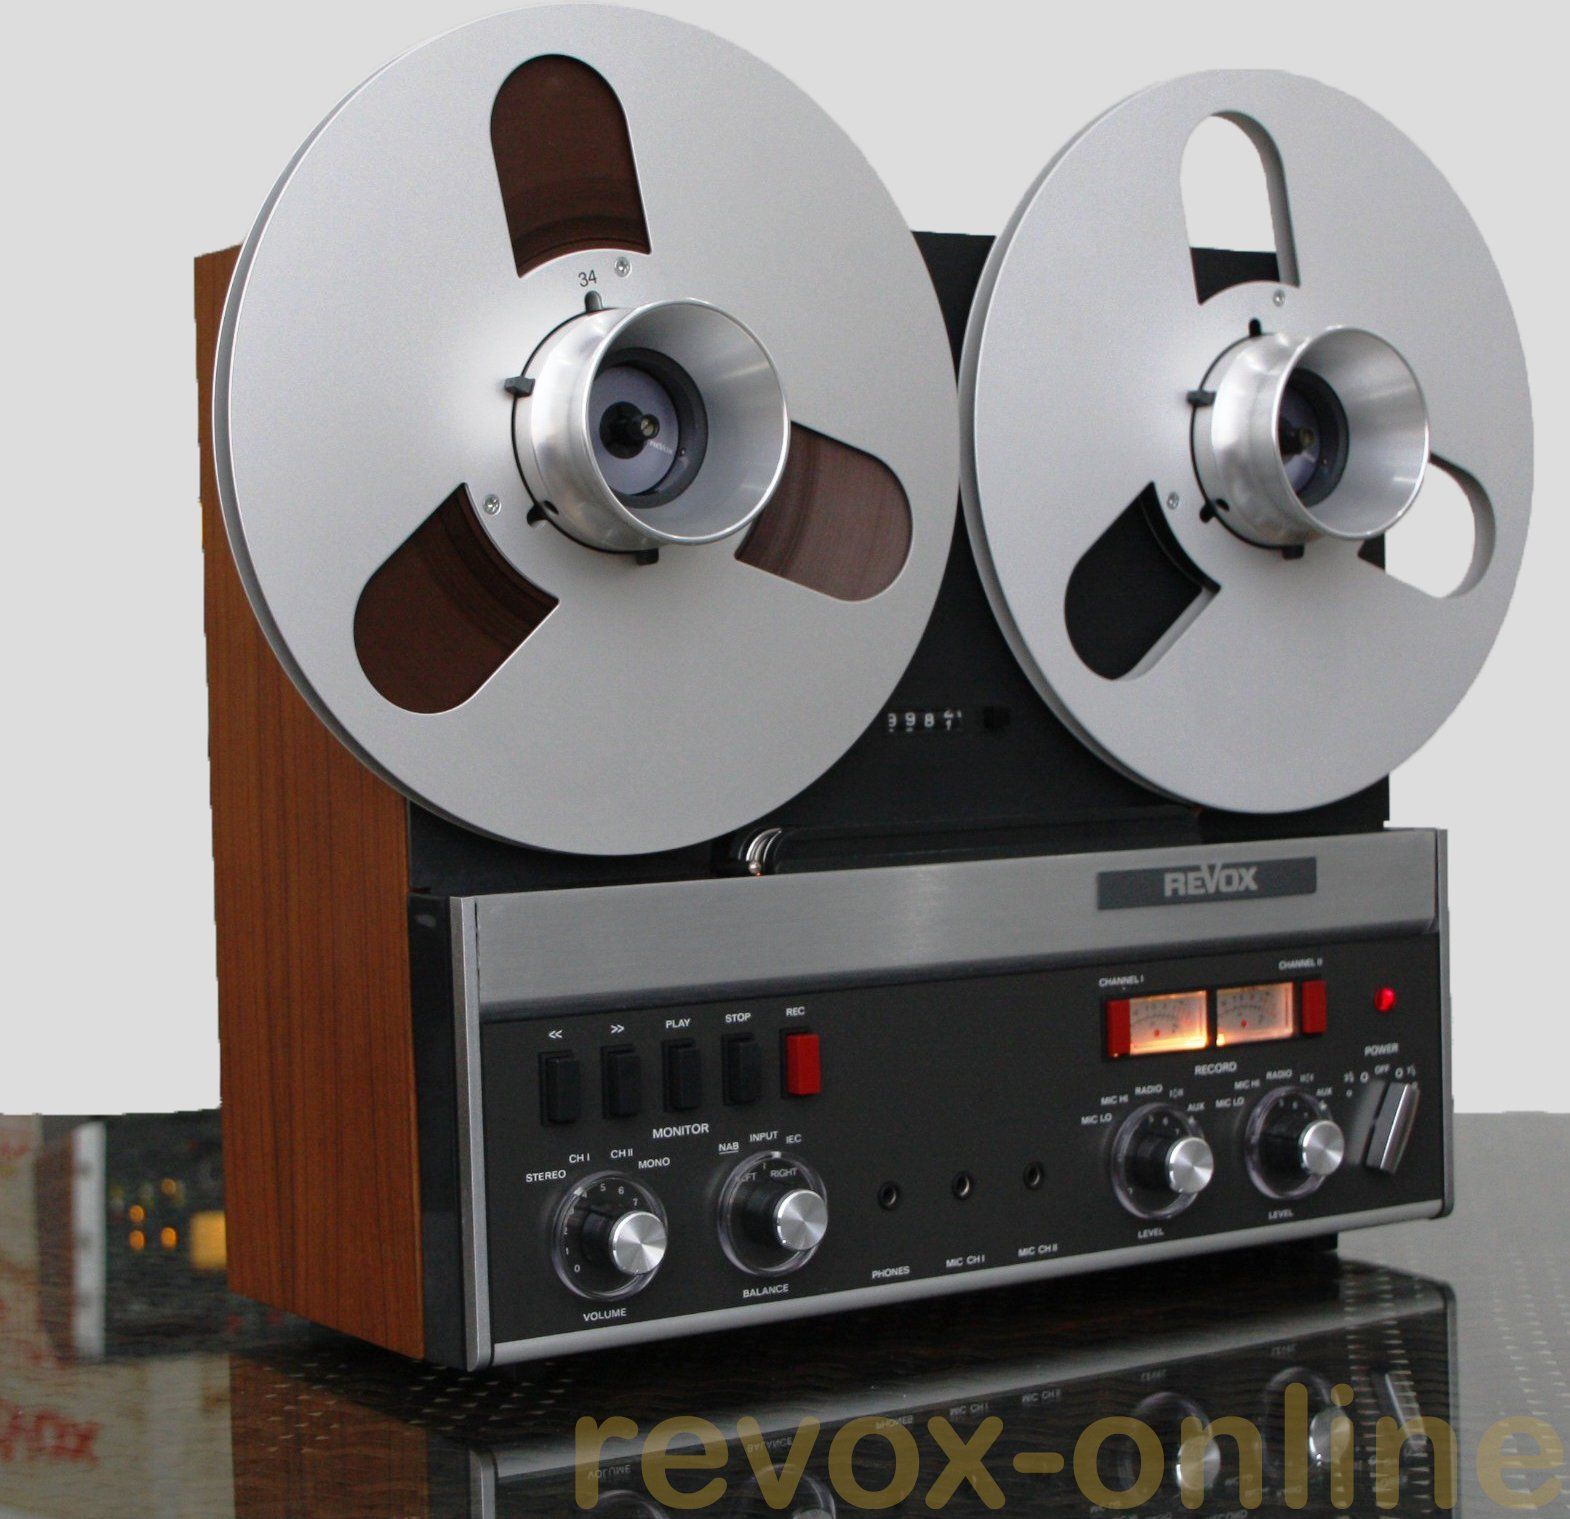 Revox A77 MK III, revox-online